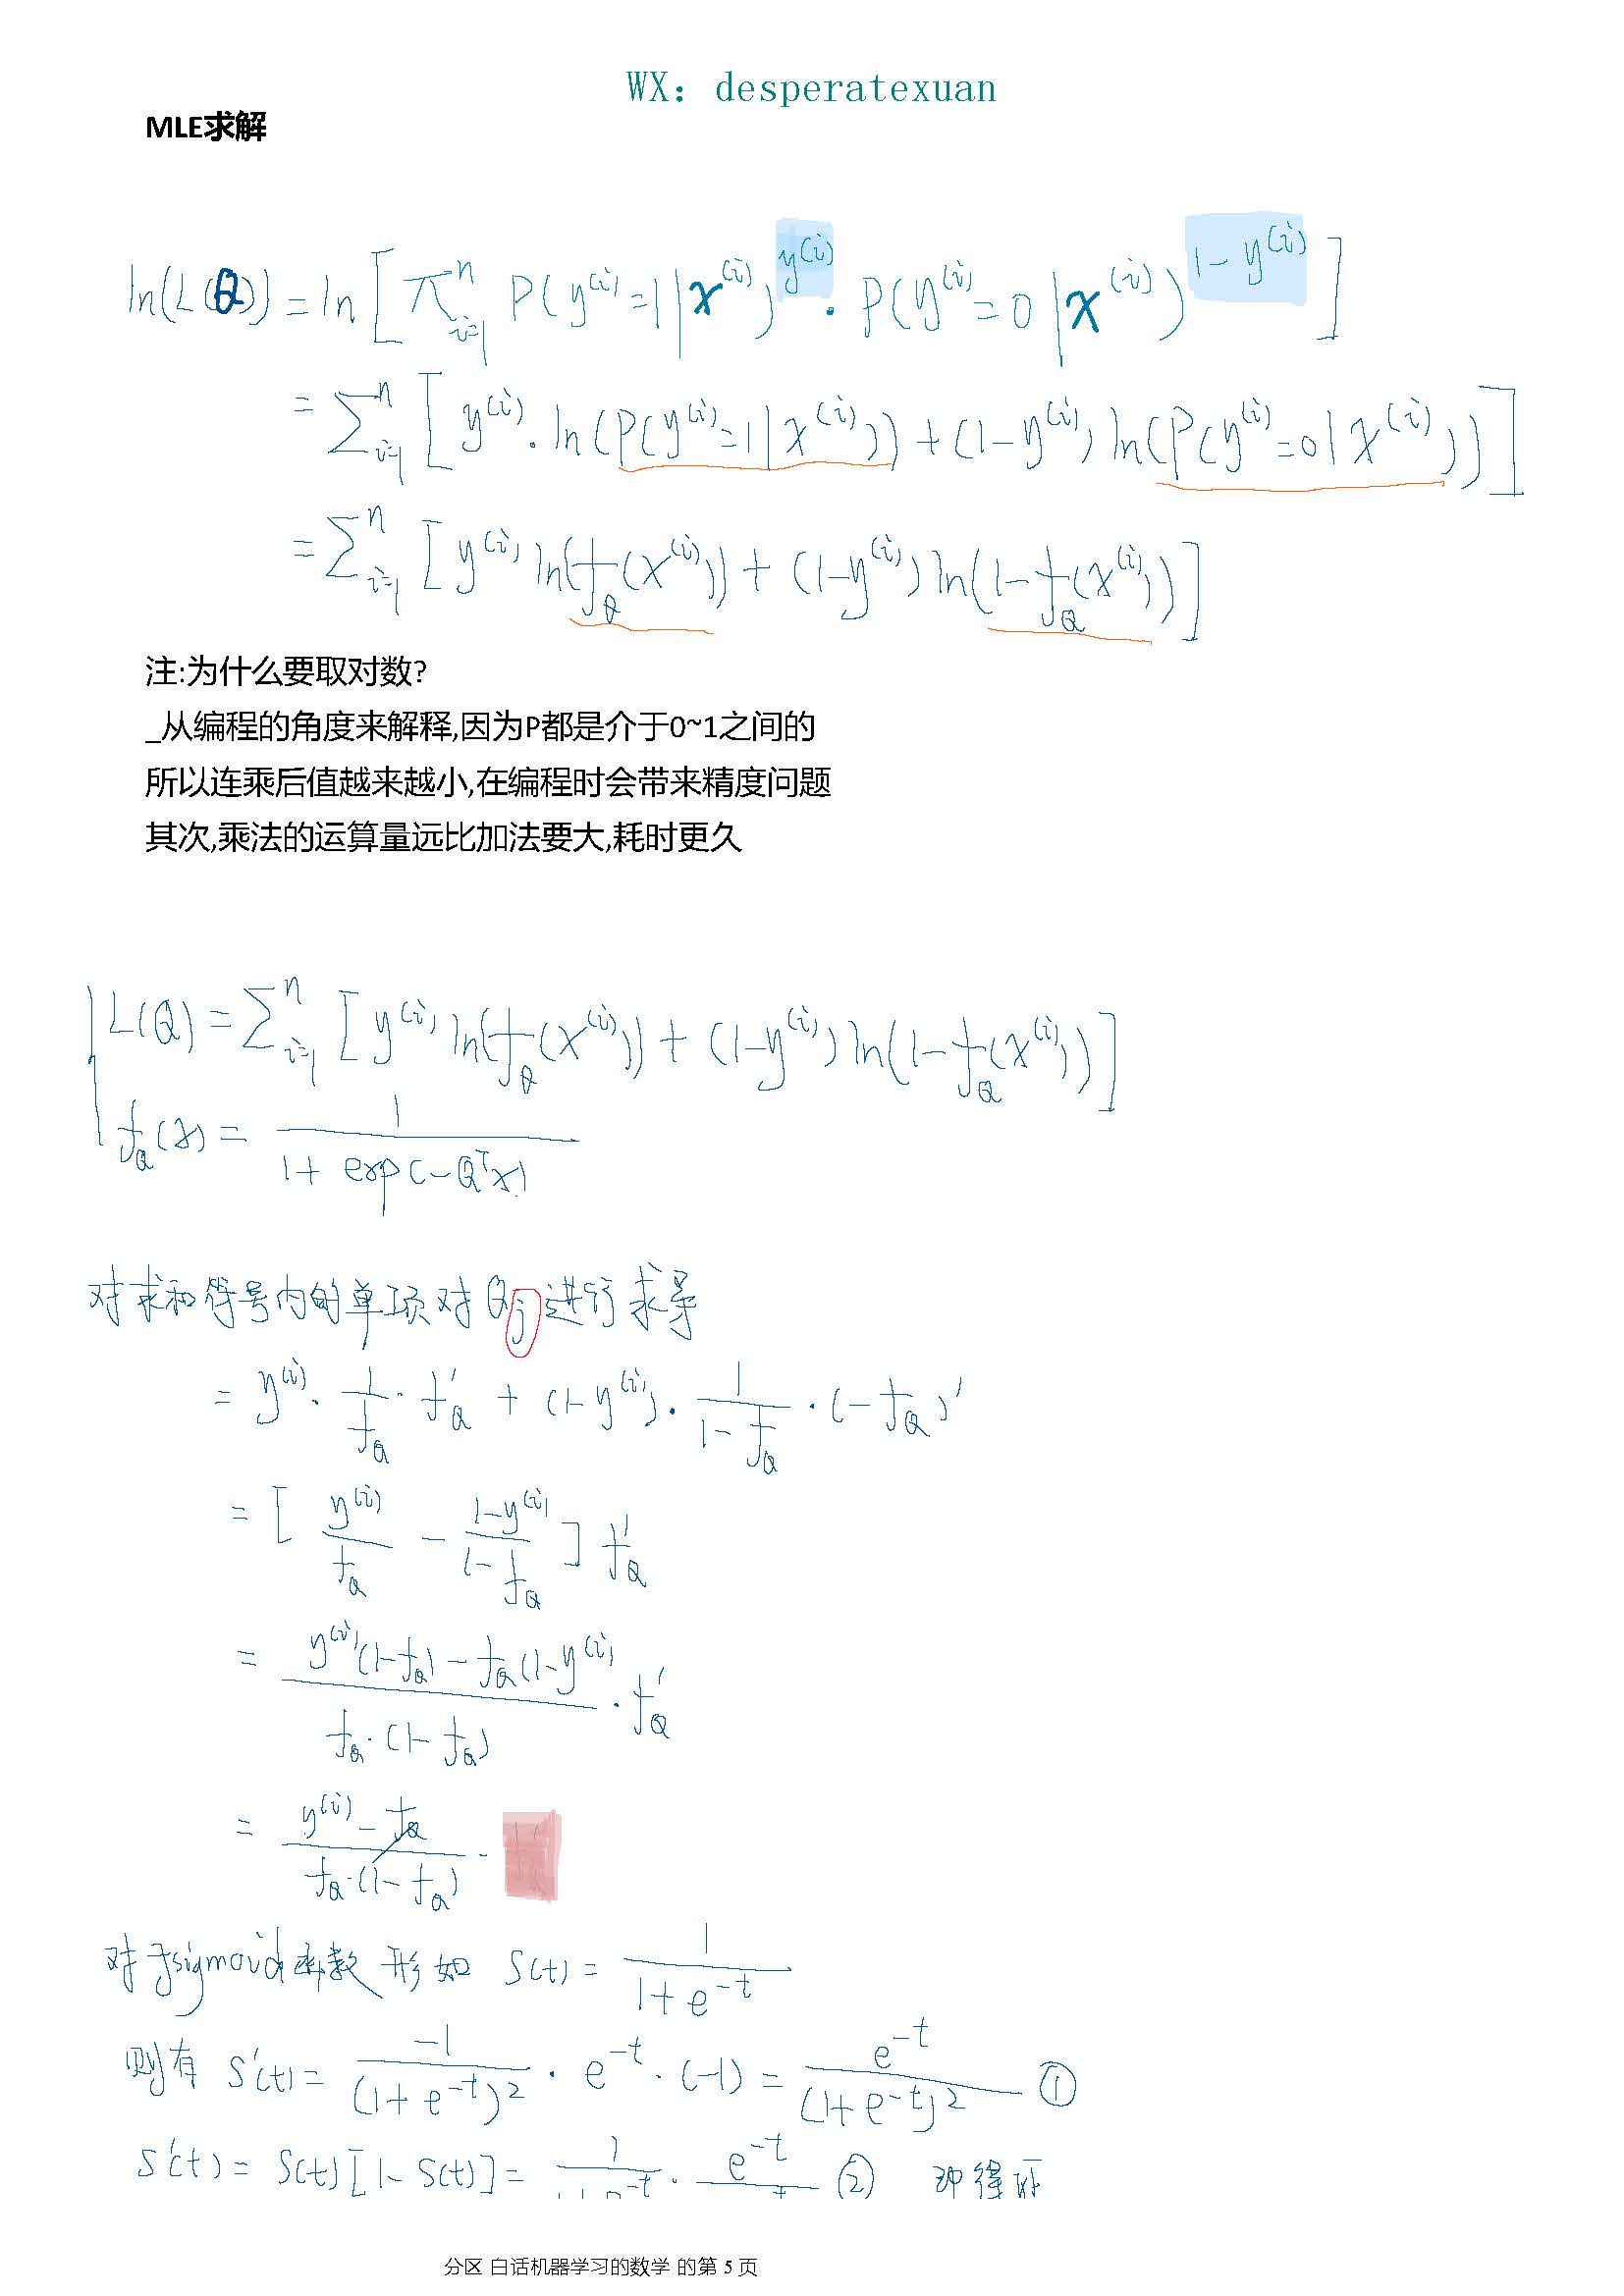 白话机器学习的数学笔记系列4分类算法_逻辑回归+MLE - 文章图片